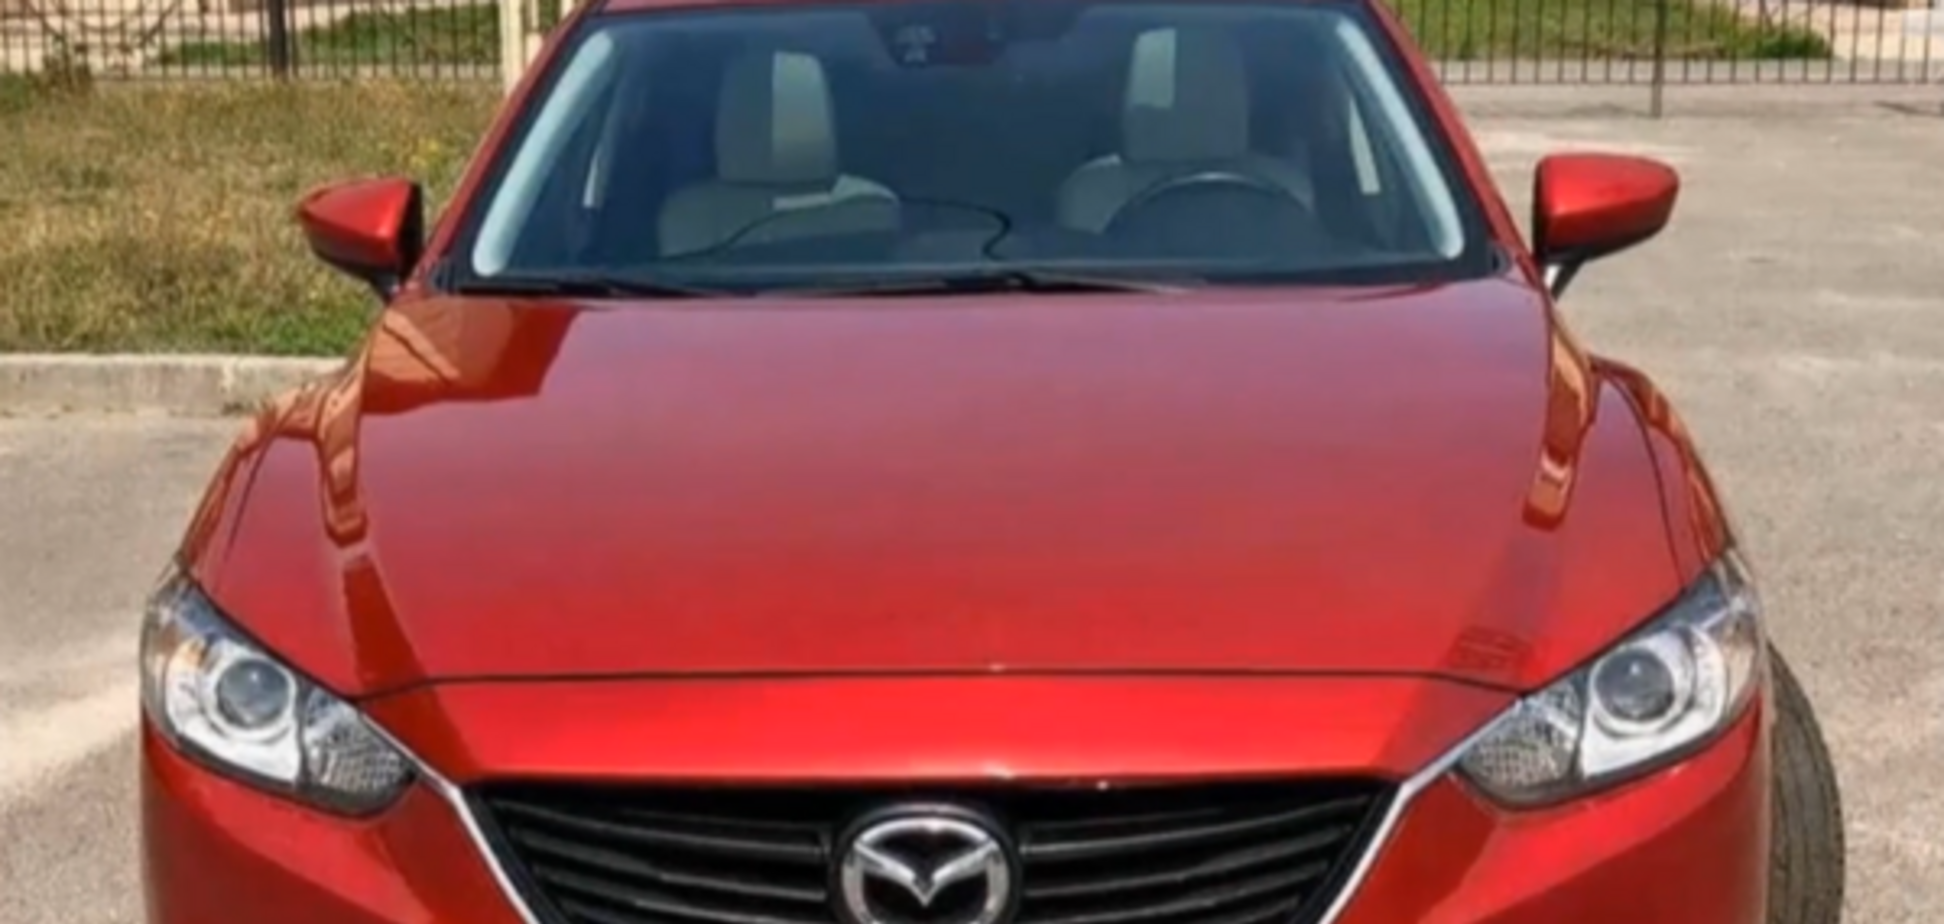 Полицейские угнали у киевлянина Mazda: появилась реакция ГБР